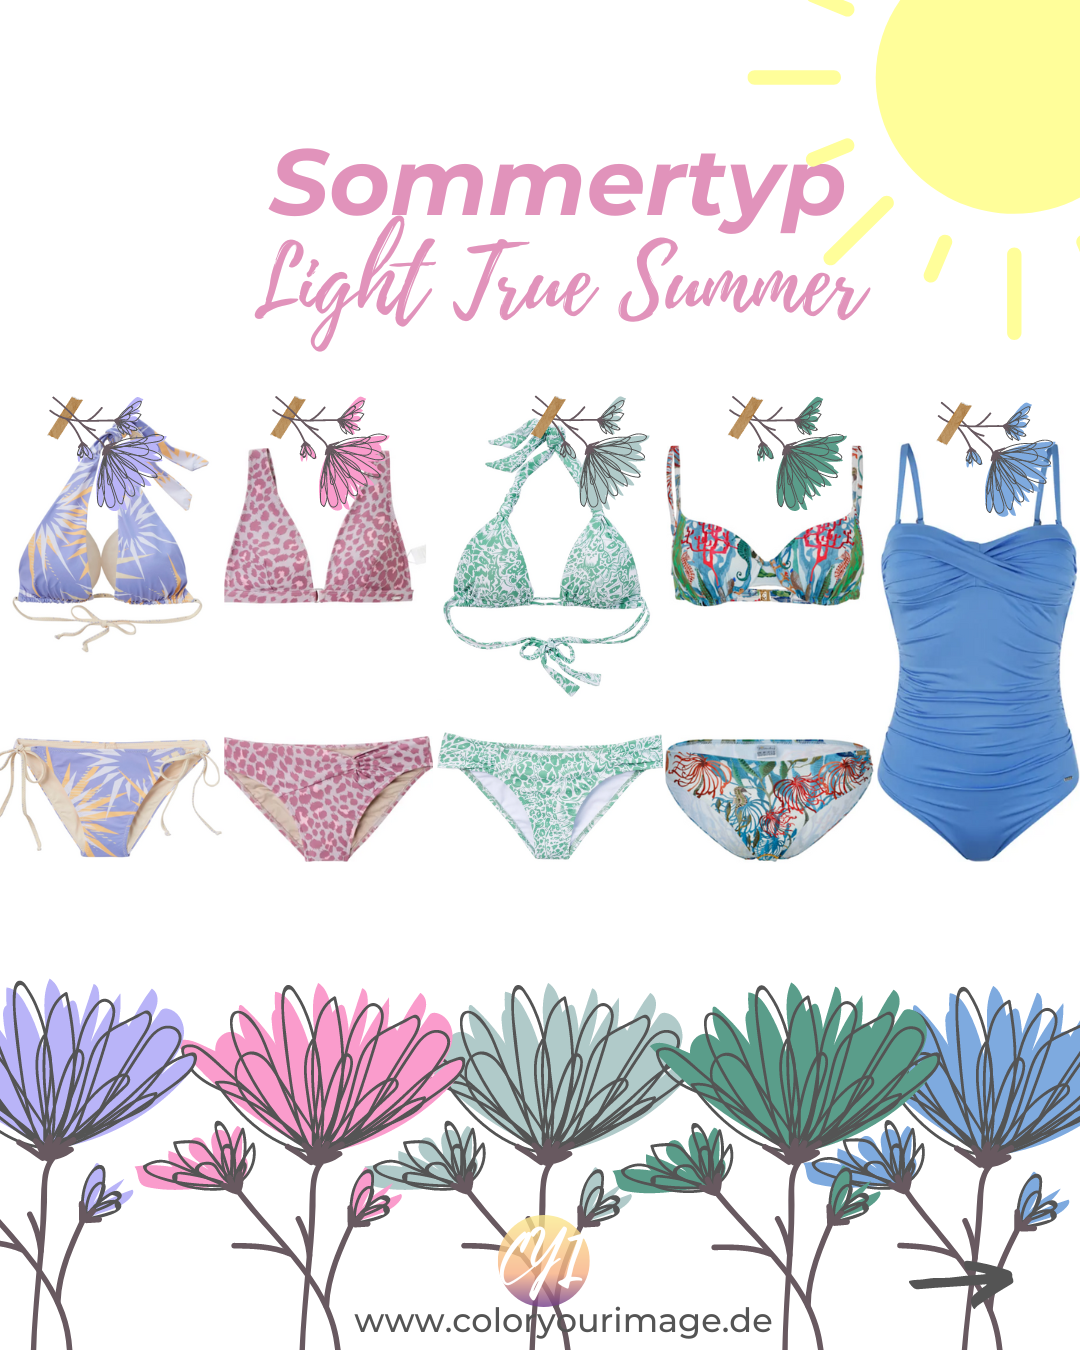 Perfekte Farben und Mode Inspirationen für Sommertypen, light, true summer, Bikini, Badeanzug, Impressionen Shop